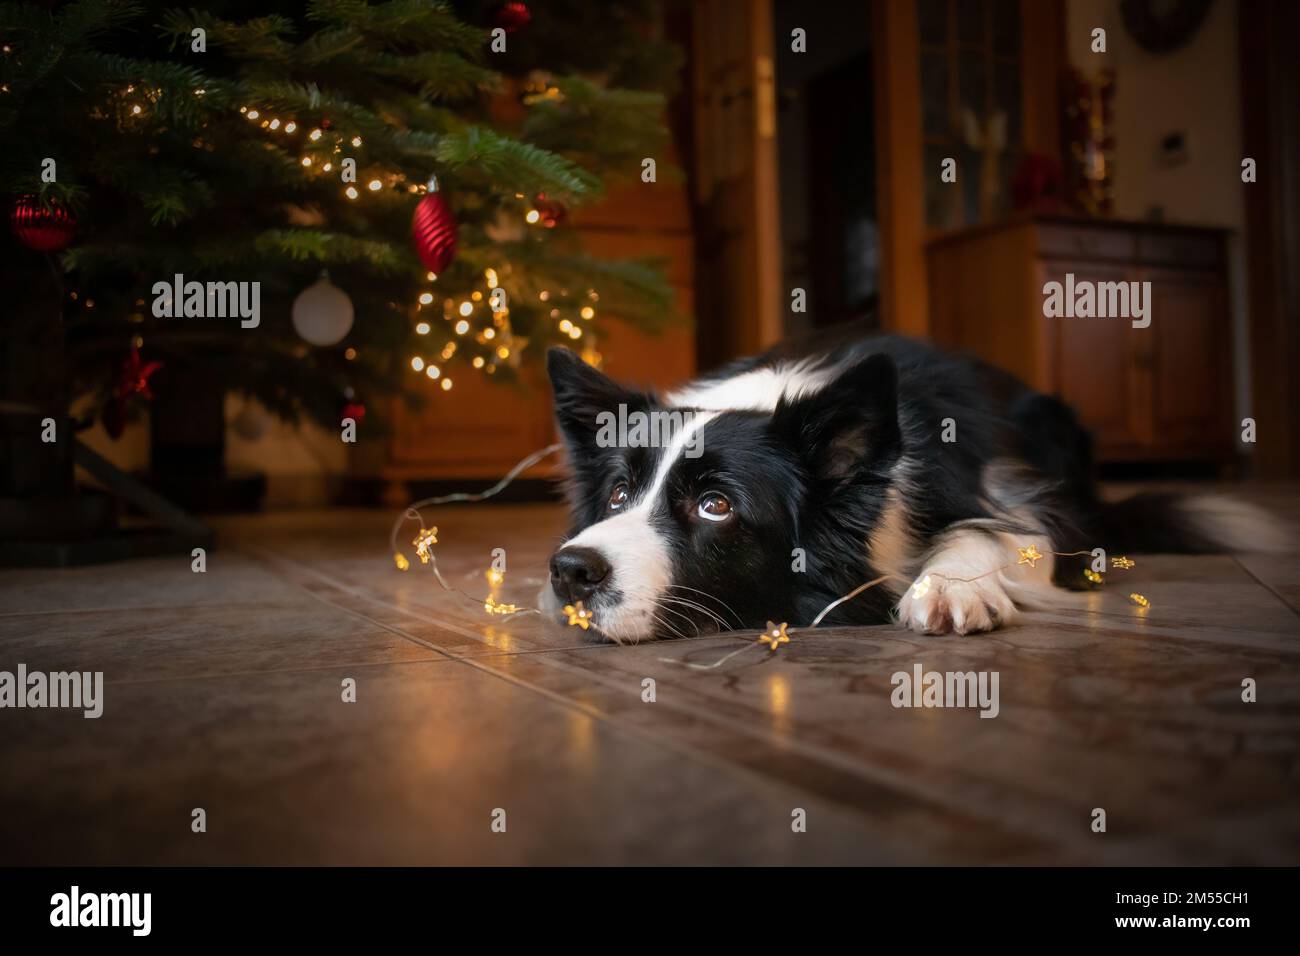 Bordure en forme de collie avec joli motif sapin de Noël. Adorable chien noir et blanc se trouve sur le sol pendant les fêtes de Noël. Banque D'Images